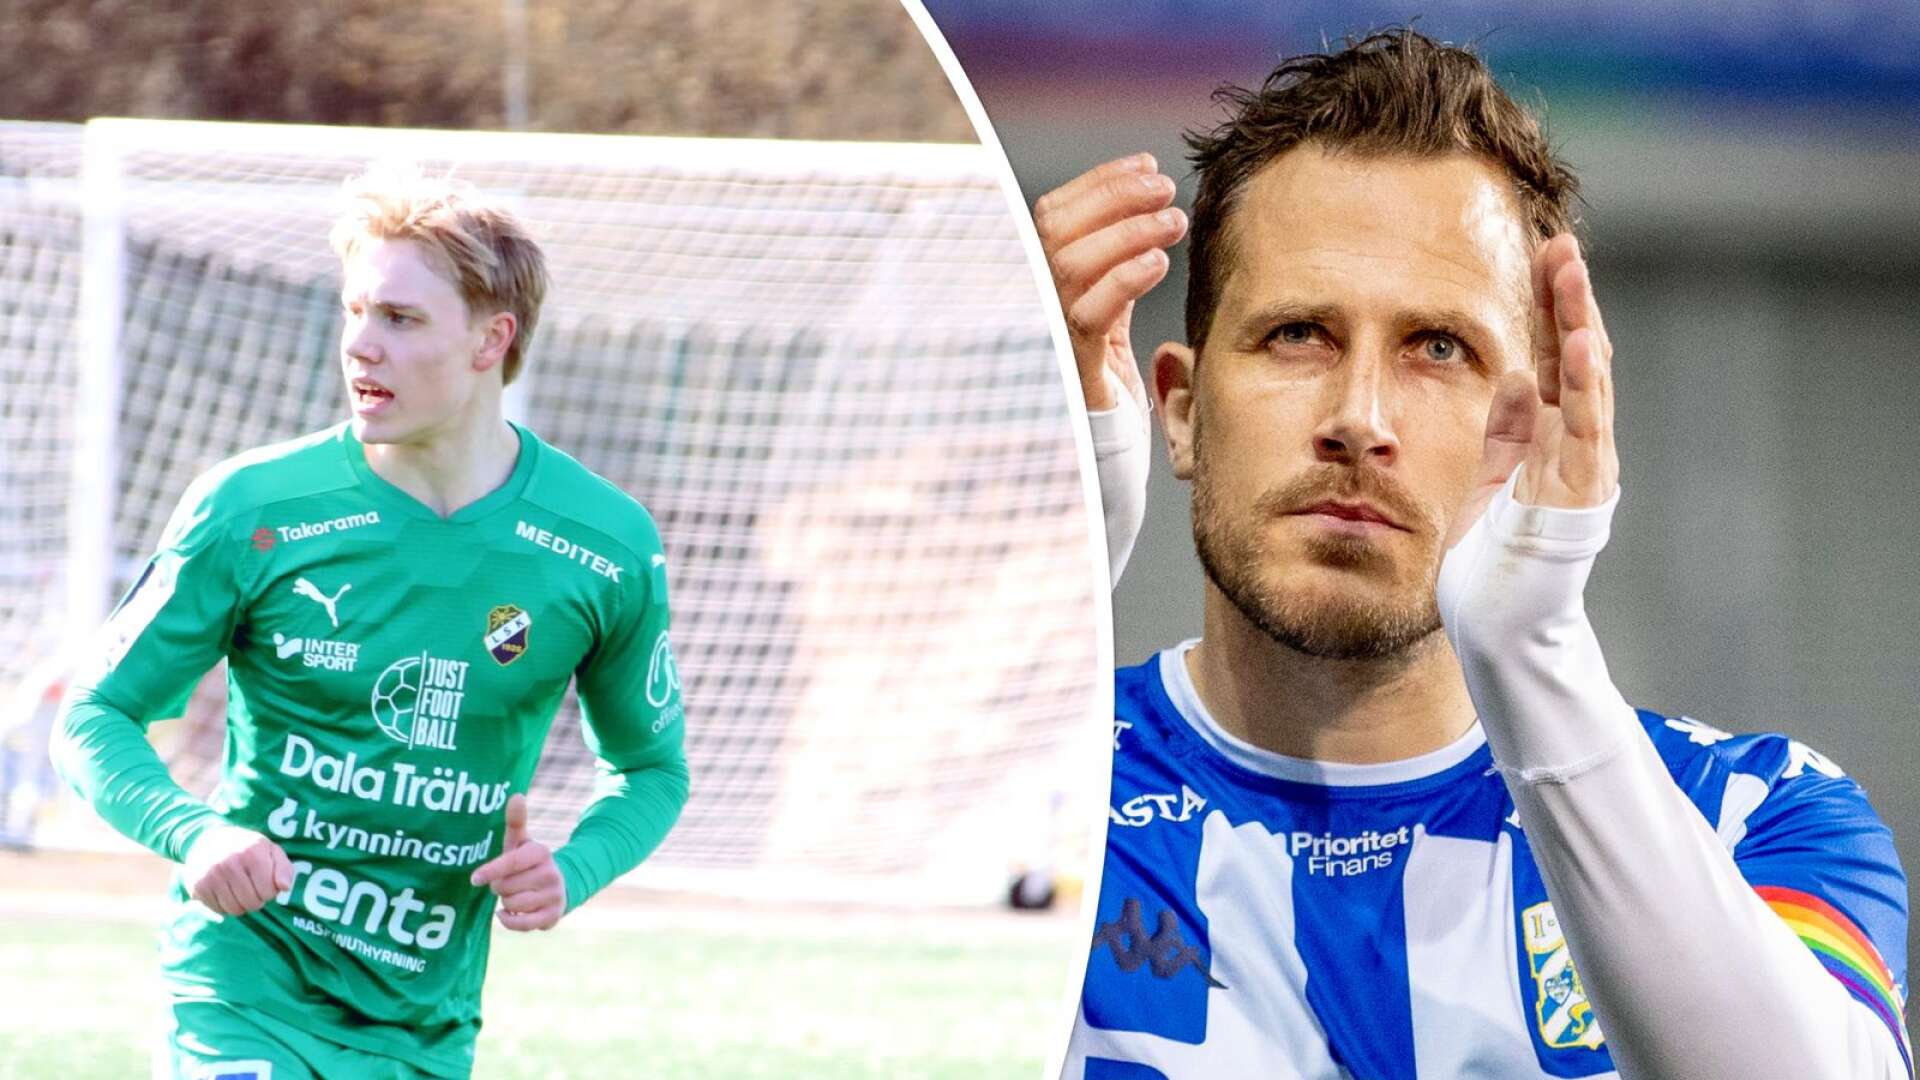 Gustav Källén från Ed ska dela träningsplan med idolen Tobias Hysén en dag i veckan framöver. 